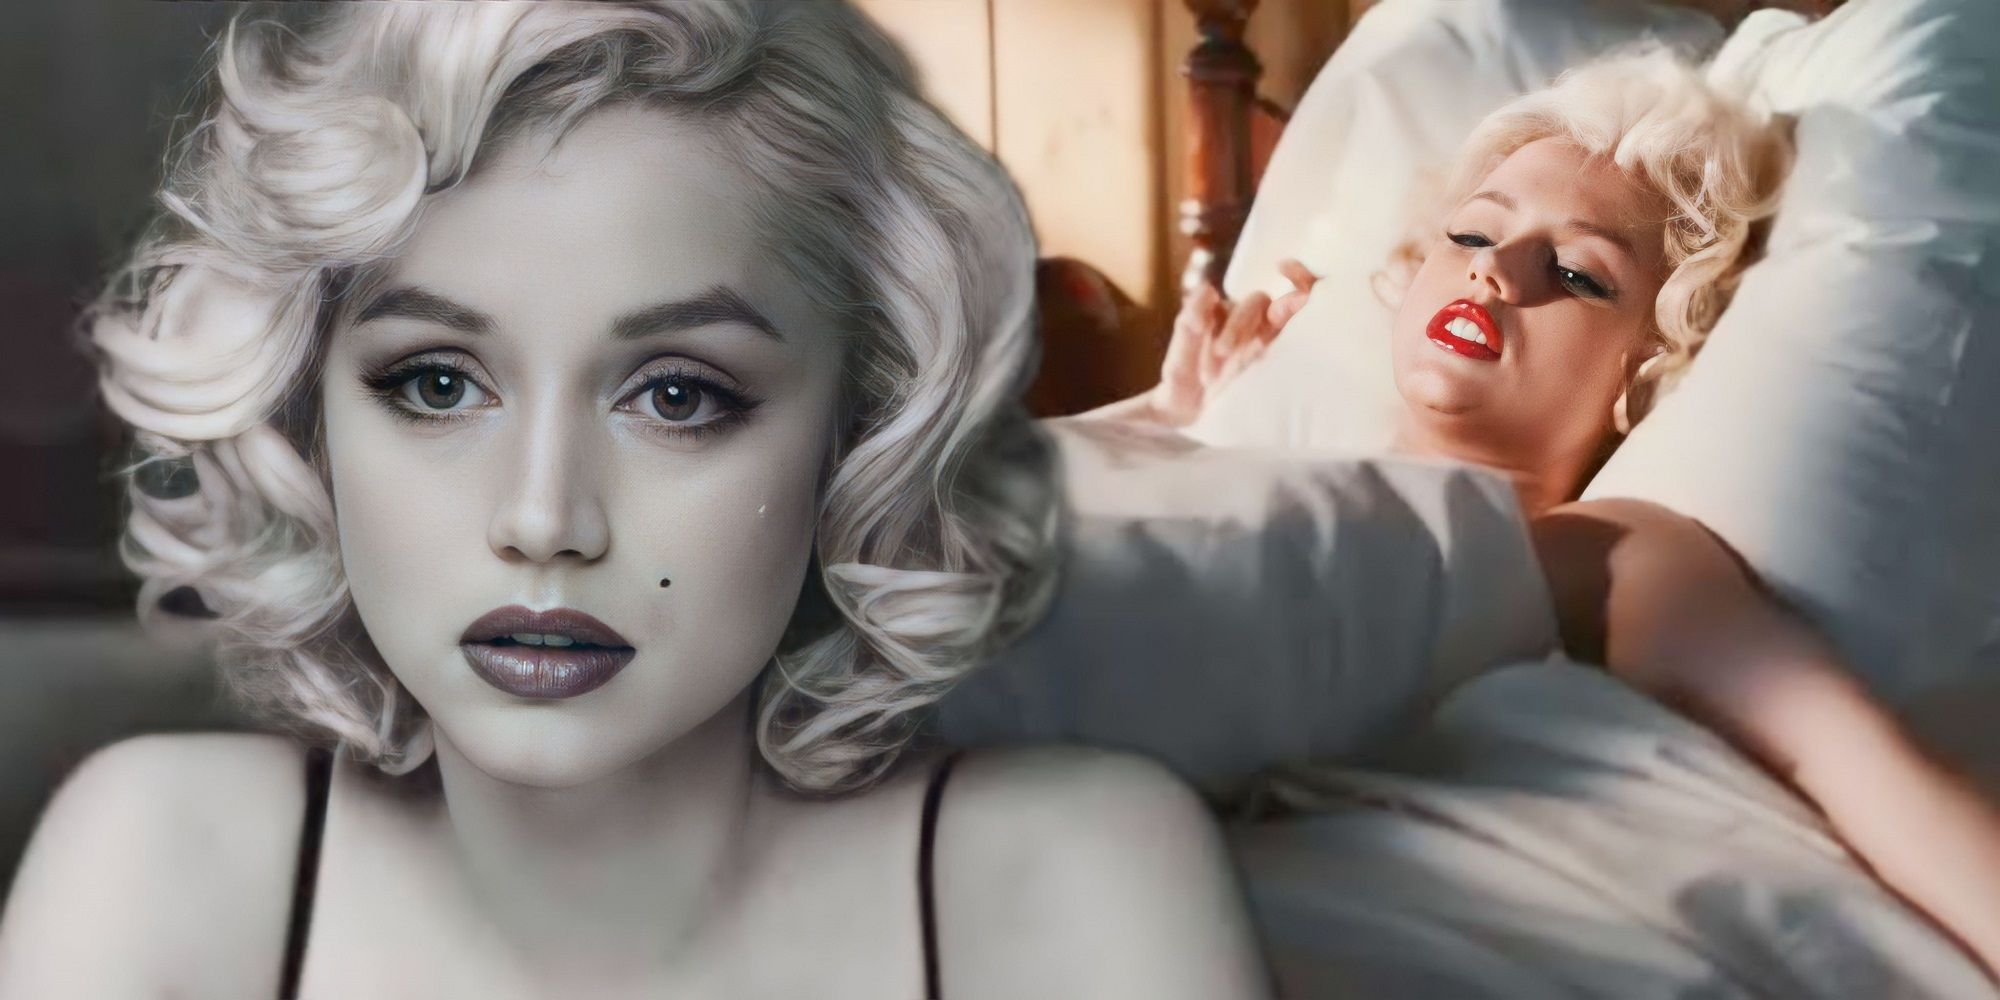 https://static1.srcdn.com/wordpress/wp-content/uploads/2022/10/Ana-de-Armas-as-Marilyn-Monroe-in-Blonde.jpg